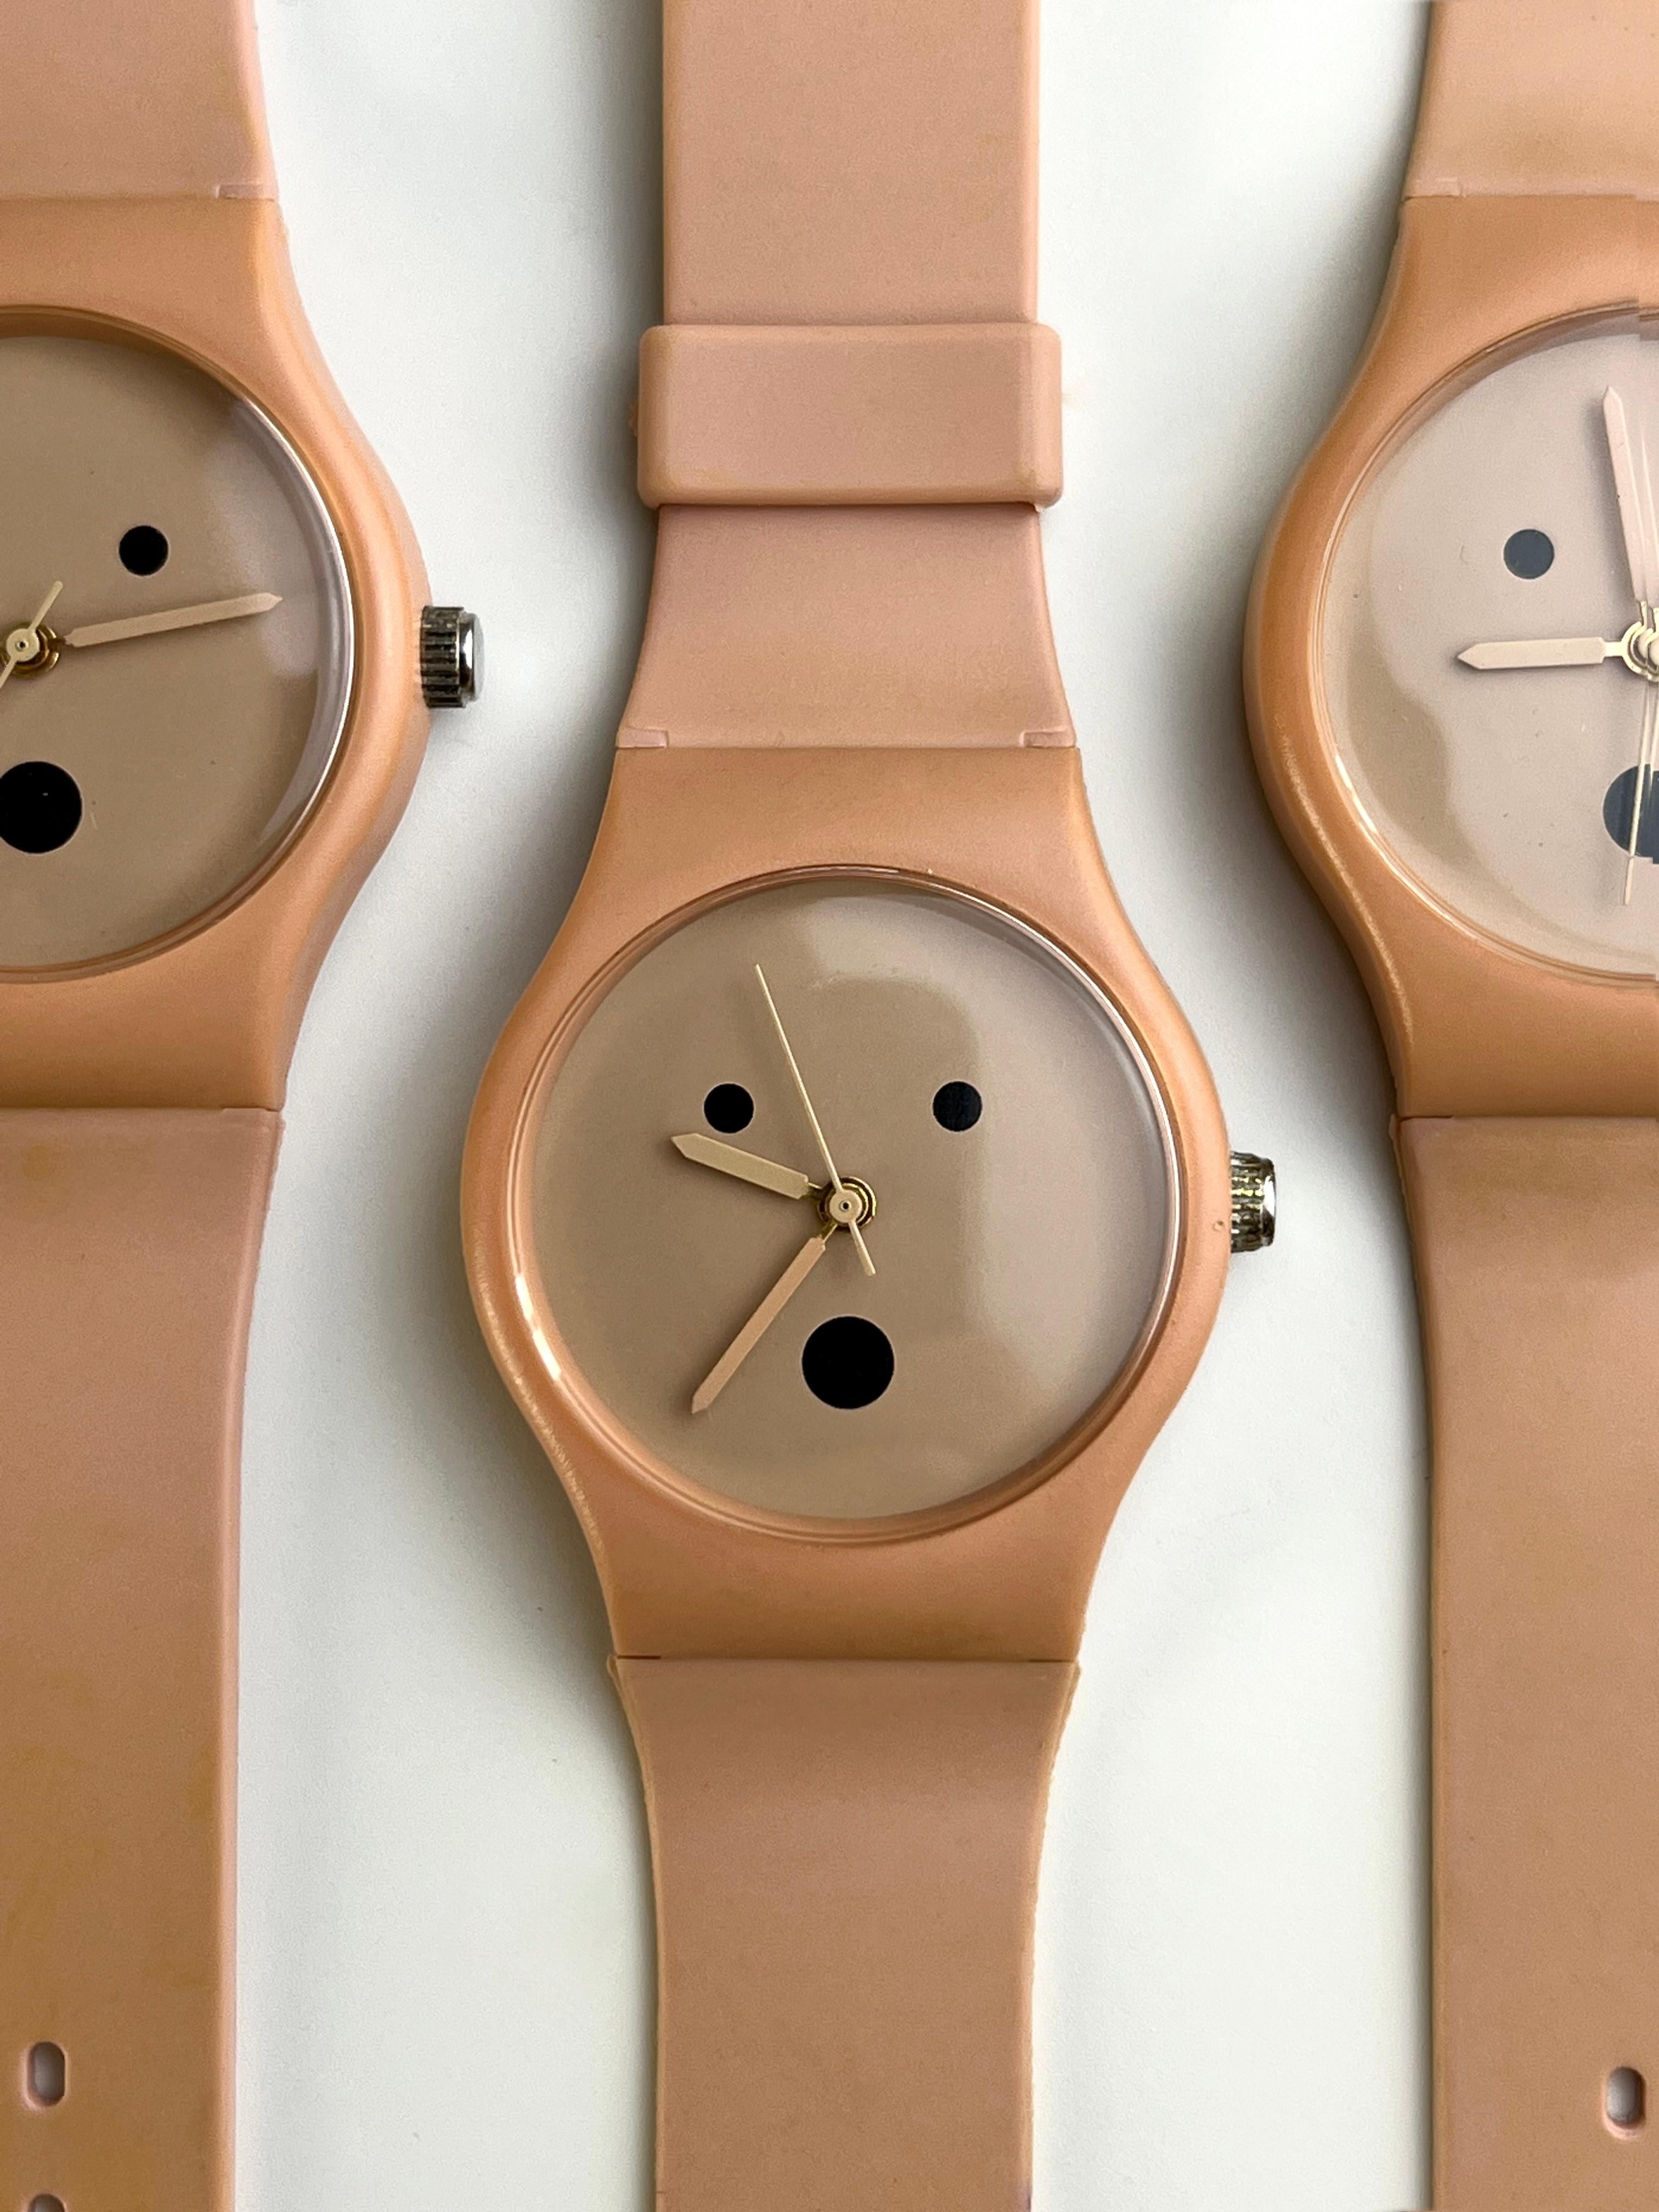 Alessandro Mendinis Armbanduhr, die in den 1990er Jahren für das Museo Alchimia gefertigt wurde, diente als bahnbrechender Prototyp für Swatch, ein renommiertes Unternehmen, für das Mendini in dieser Zeit zahlreiche Zeitmesser entwarf. Diese Uhr aus